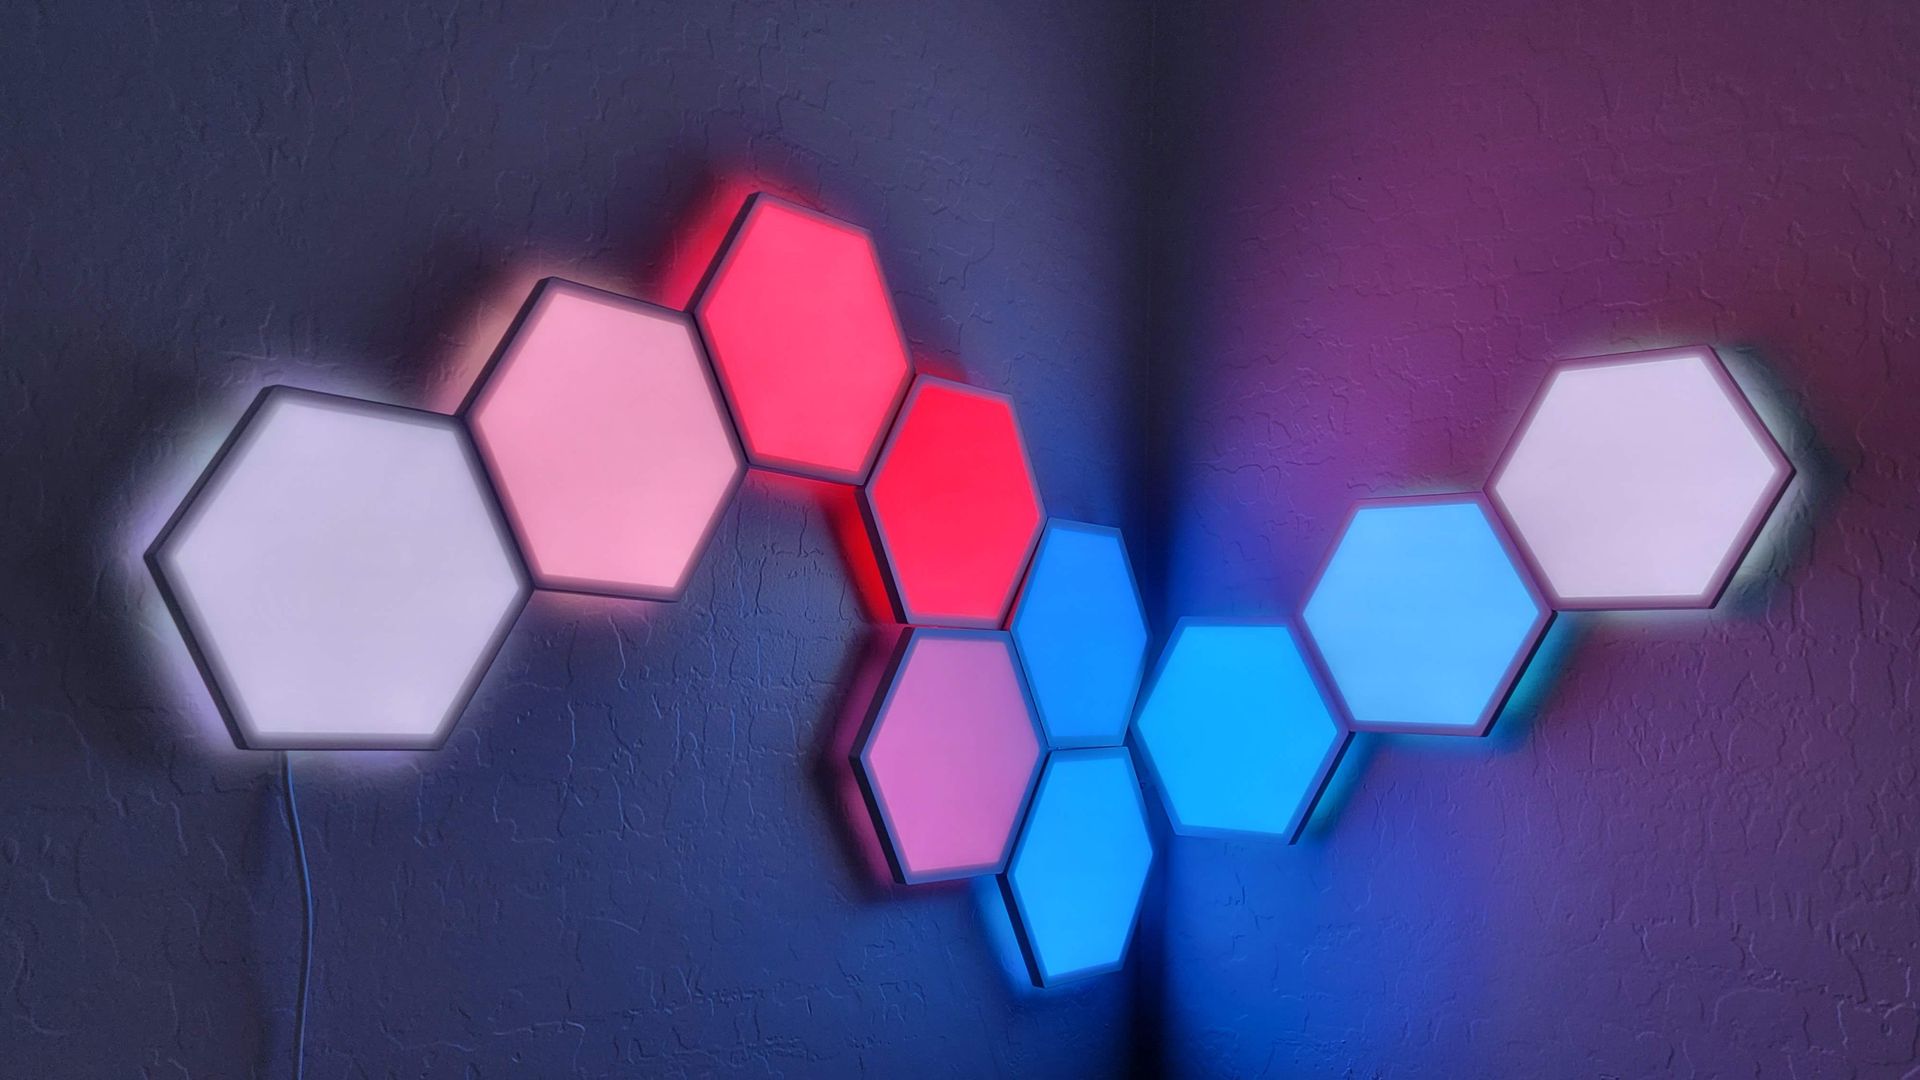 Panneaux lumineux LED Hexa - WiFi RGBIC Musique Sync - Applique murale  hexagonale 